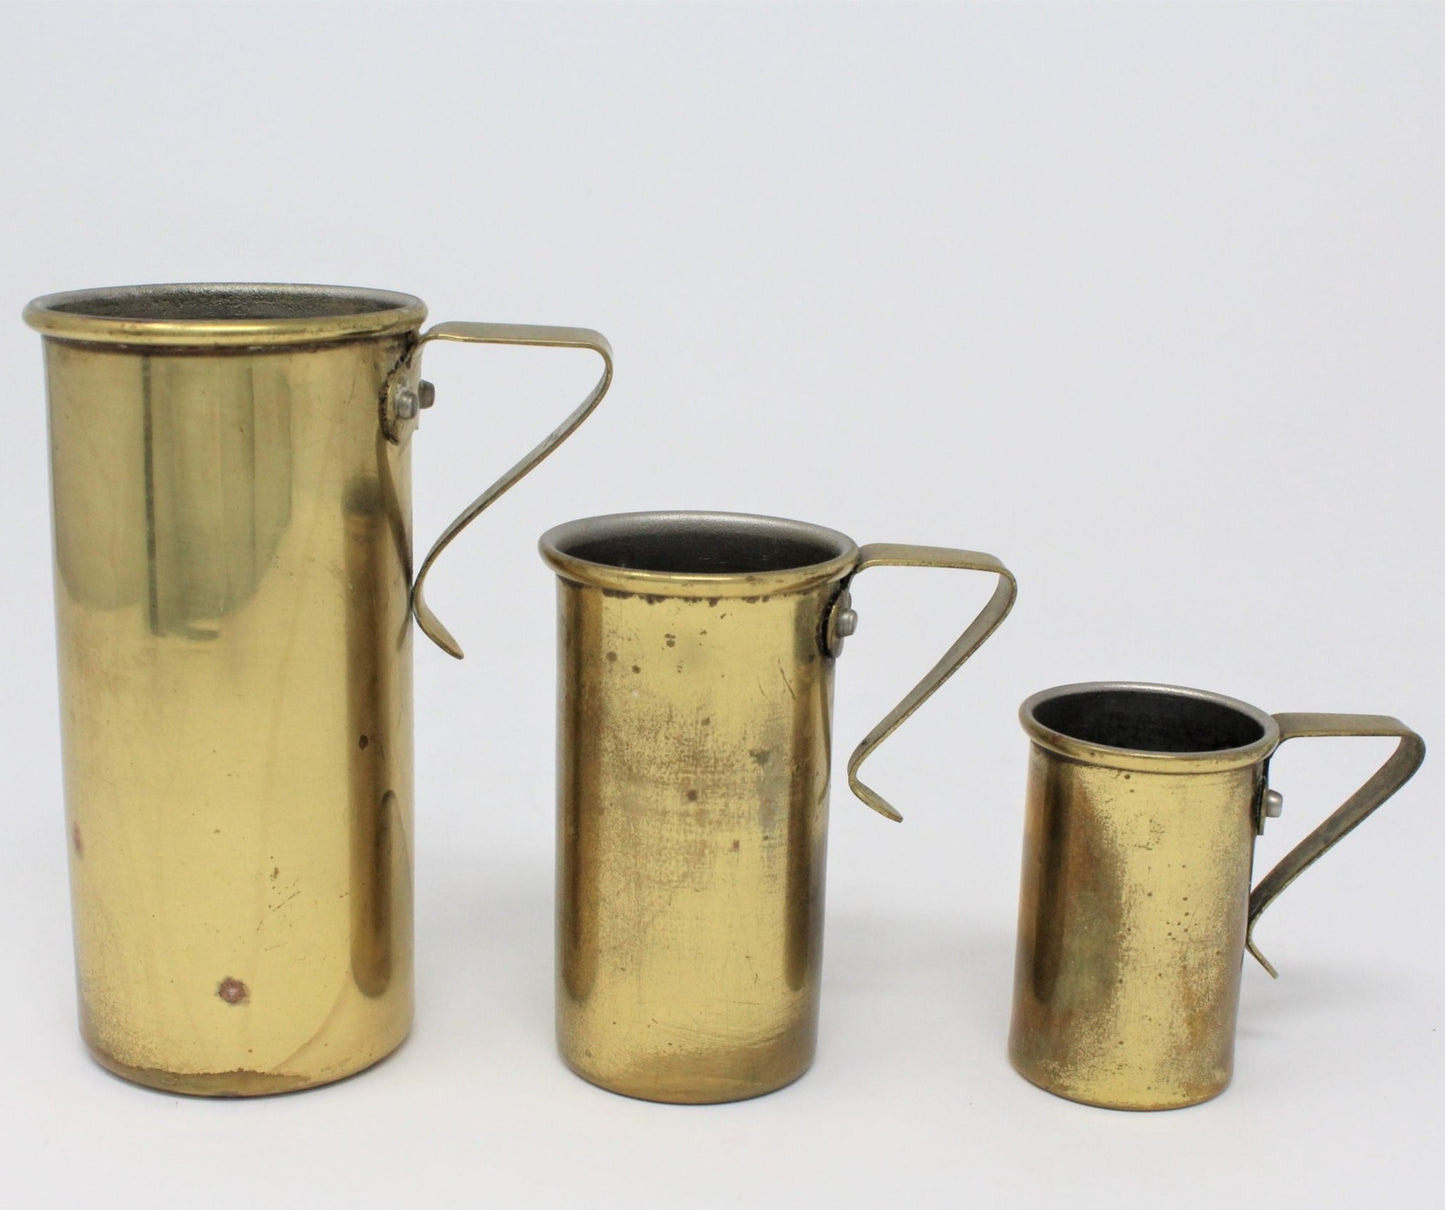 Measuring Cups, Brass Set of 3, O.D.I., Stackable, Vintage Korea